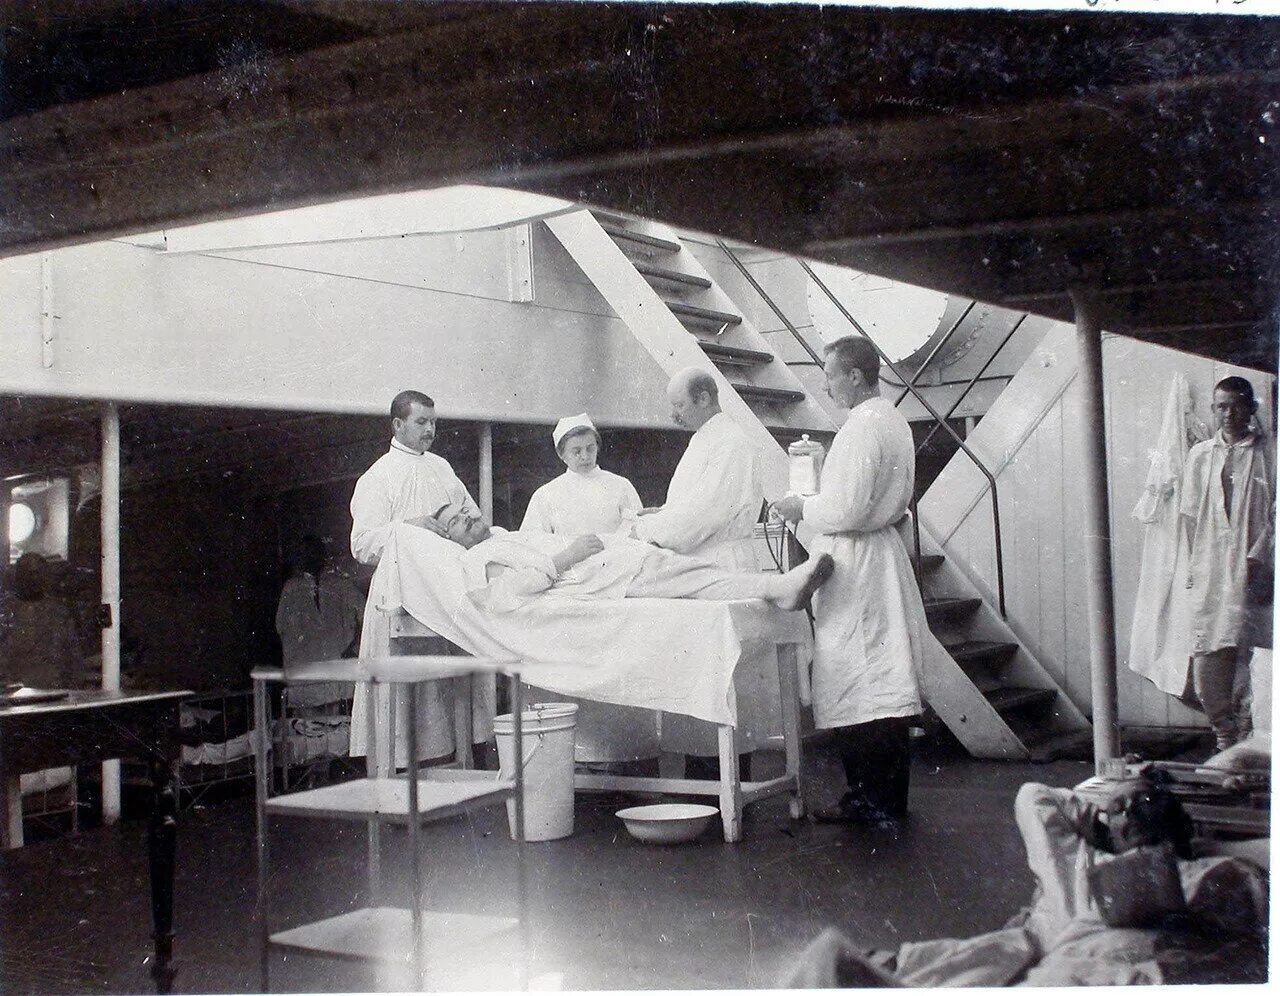 Поставляли в госпитали. Военный госпиталь 19 век. Плавучий госпиталь "царица".